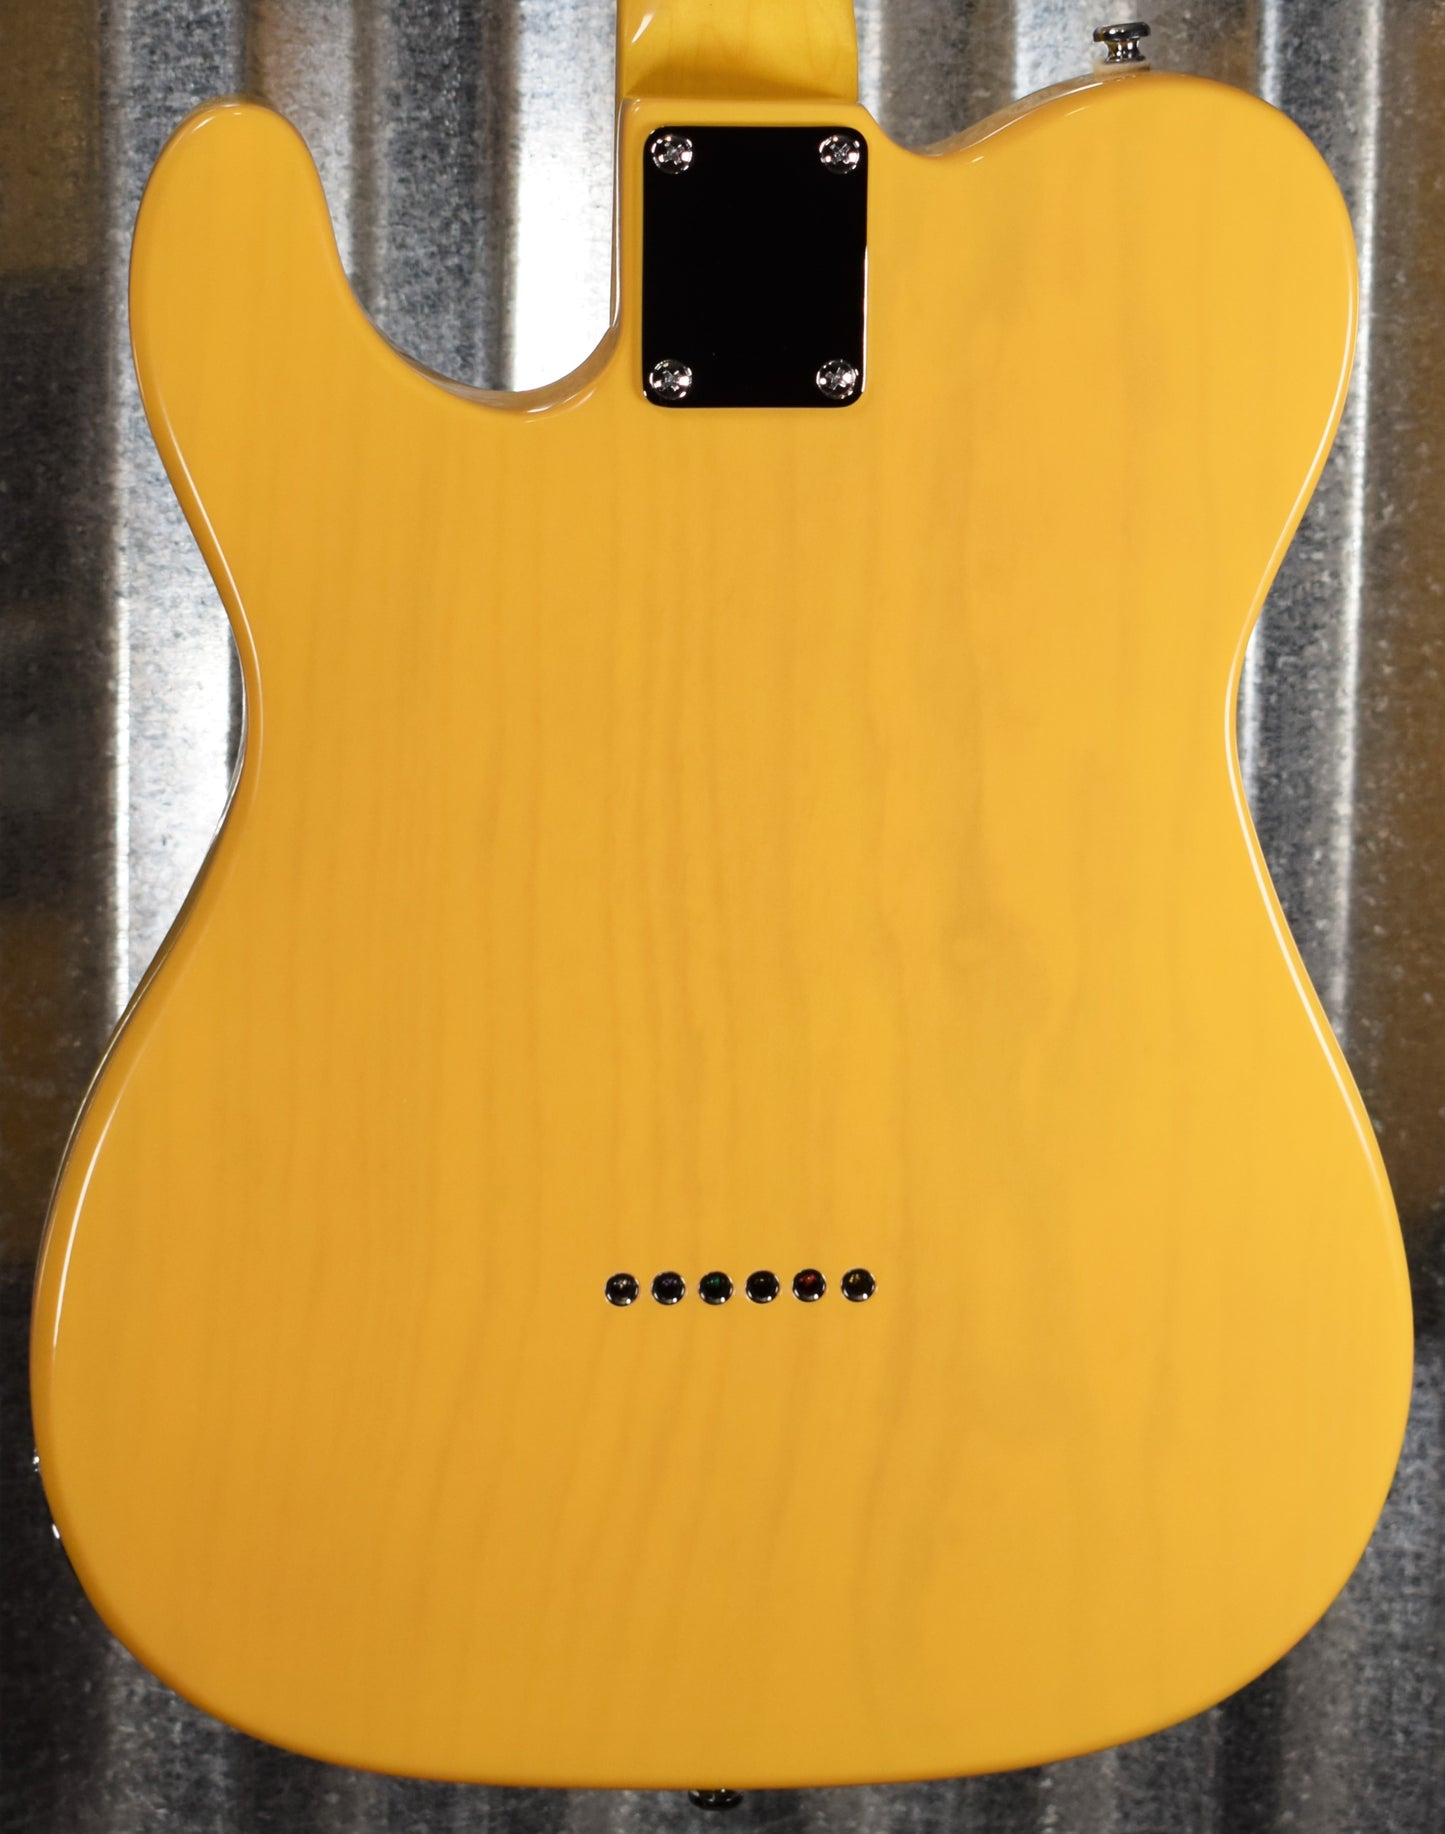 G&L Tribute ASAT Classic Butterscotch Blonde Guitar #9743 Demo